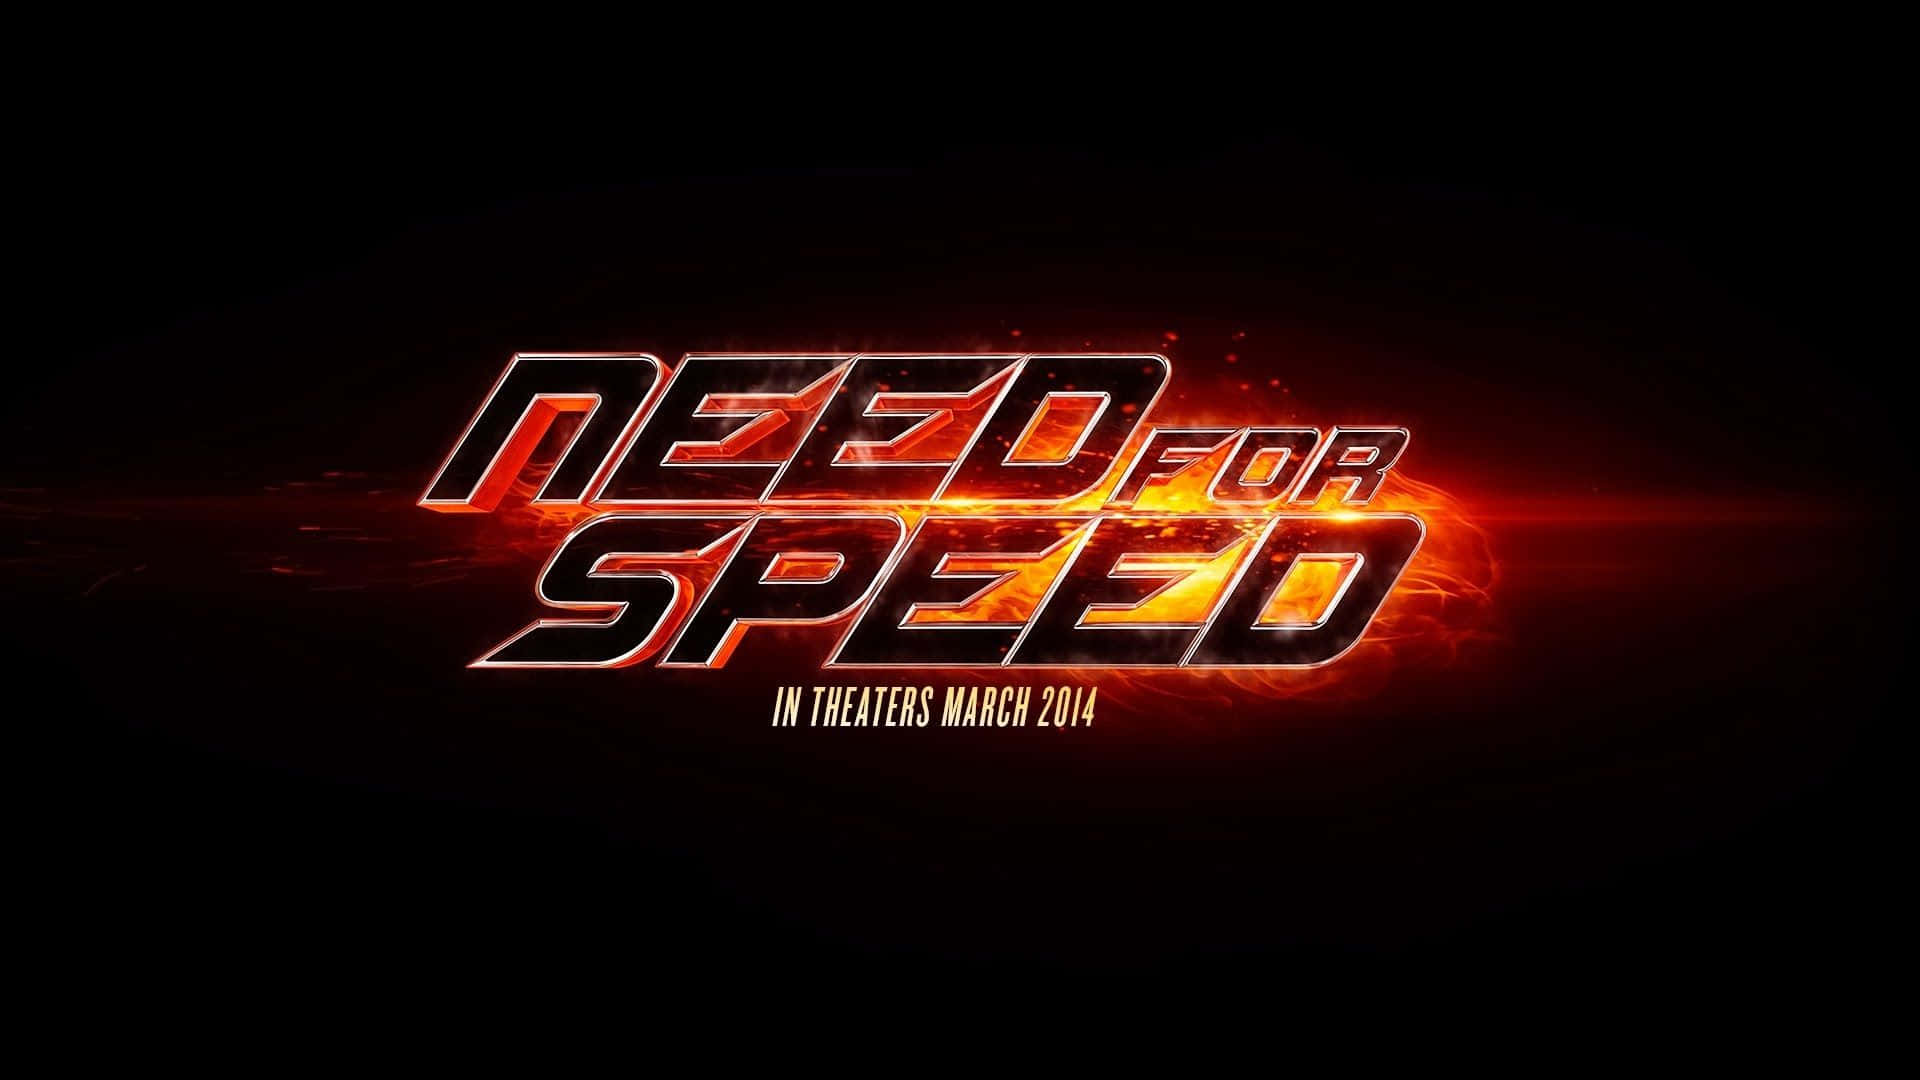 Ichbrauche Ein Need For Speed Hd-hintergrundbild Für Meinen Computer Oder Mein Handy. Wallpaper